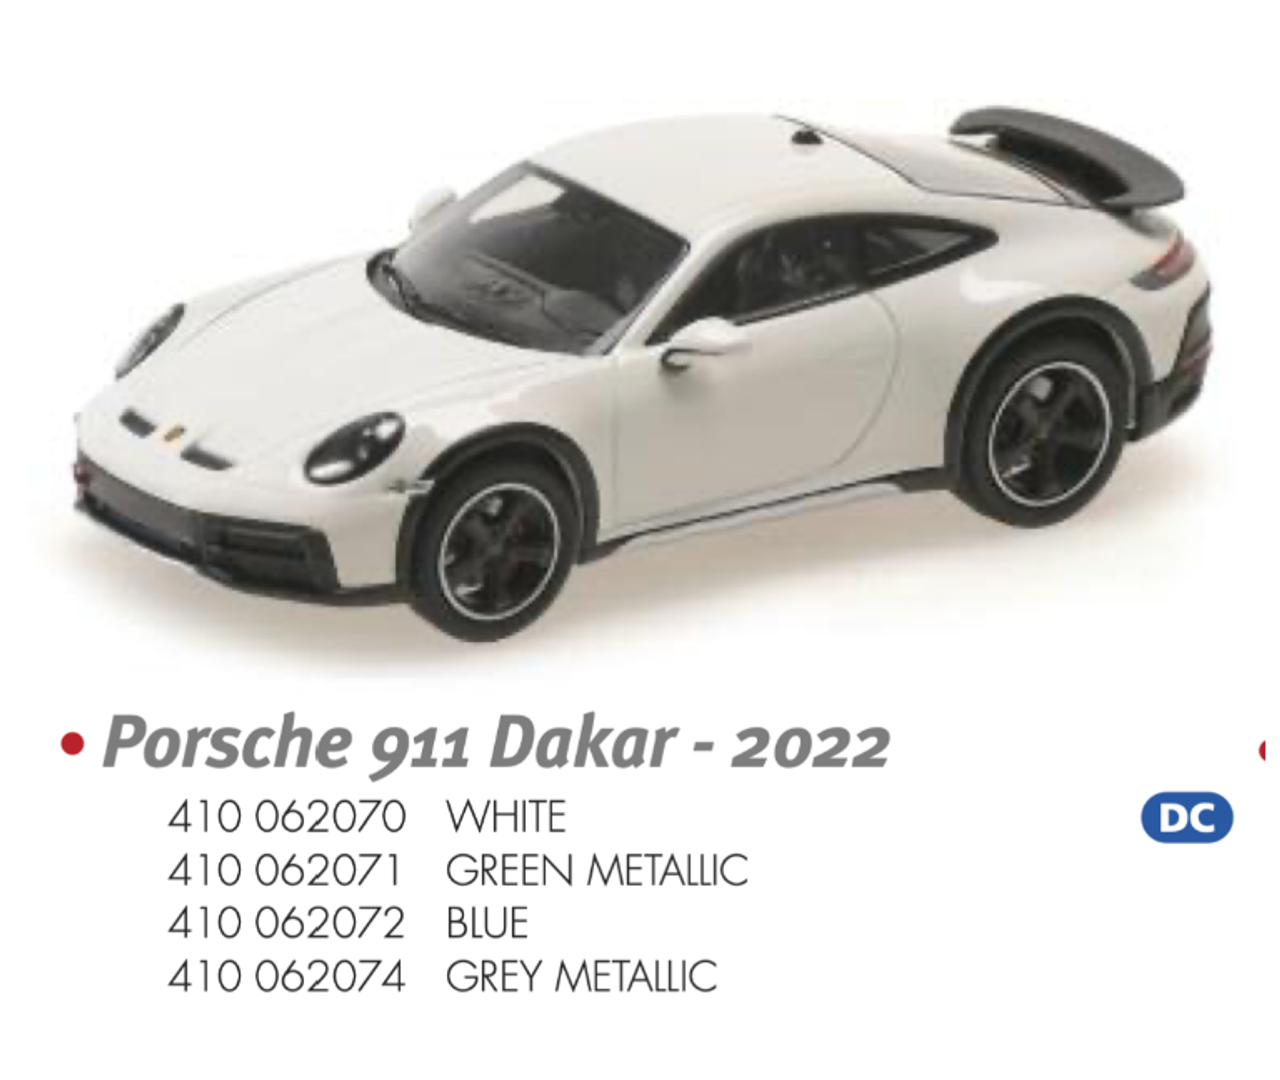 1/43 MINICHAMPS PORSCHE 911 DAKAR - 2022 - GREEN METALLIC Diecast Car Model